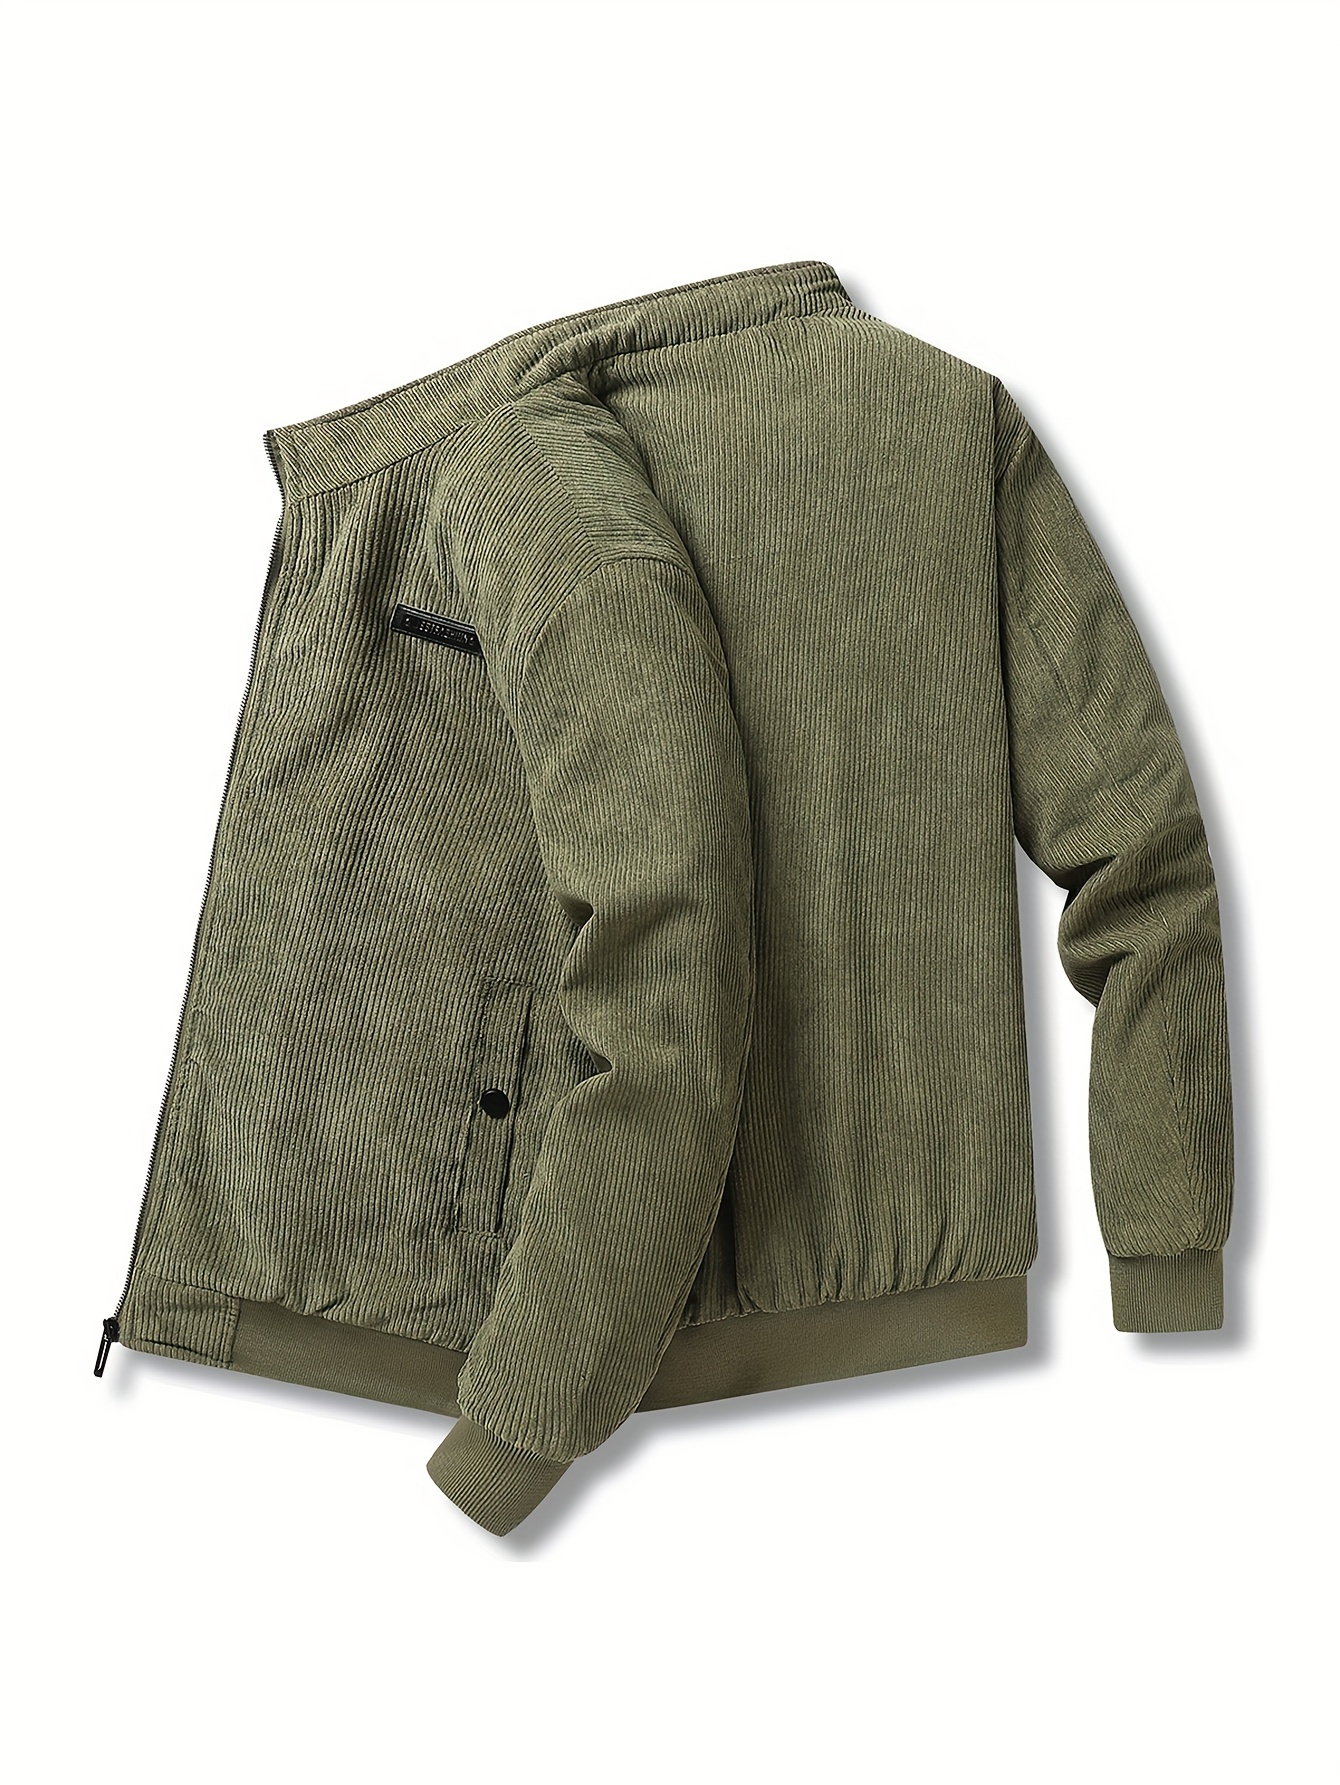 WL 7567 Sherpa Jacket - Kaly Clothing